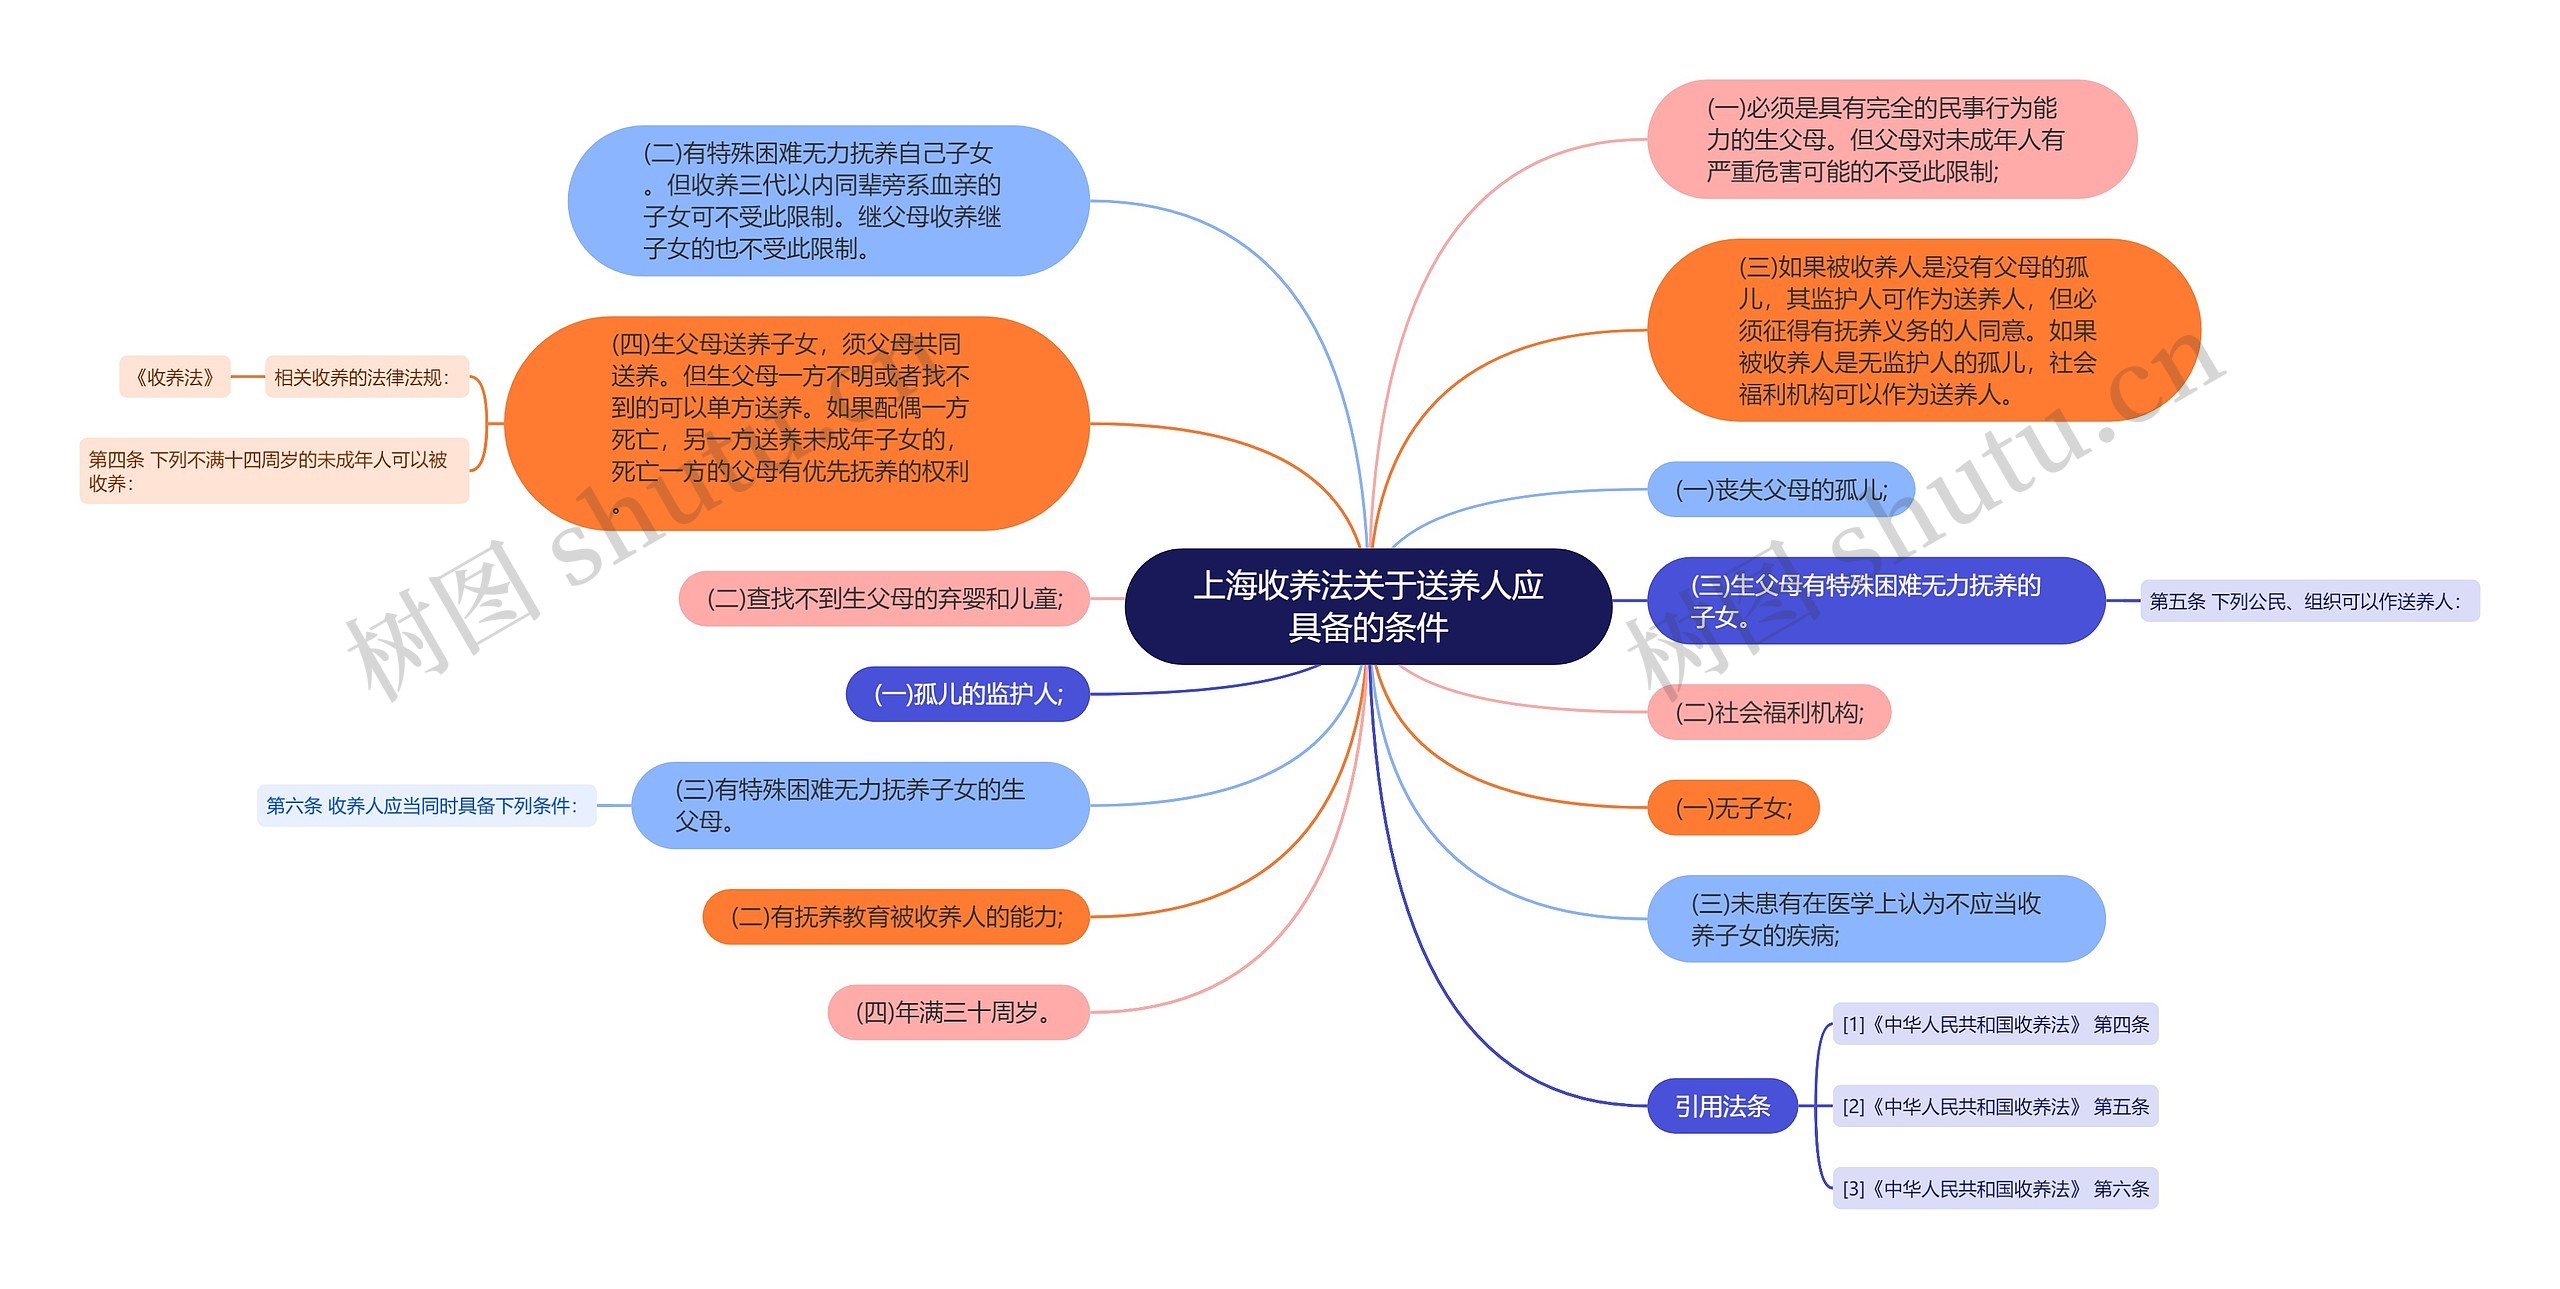 上海收养法关于送养人应具备的条件思维导图